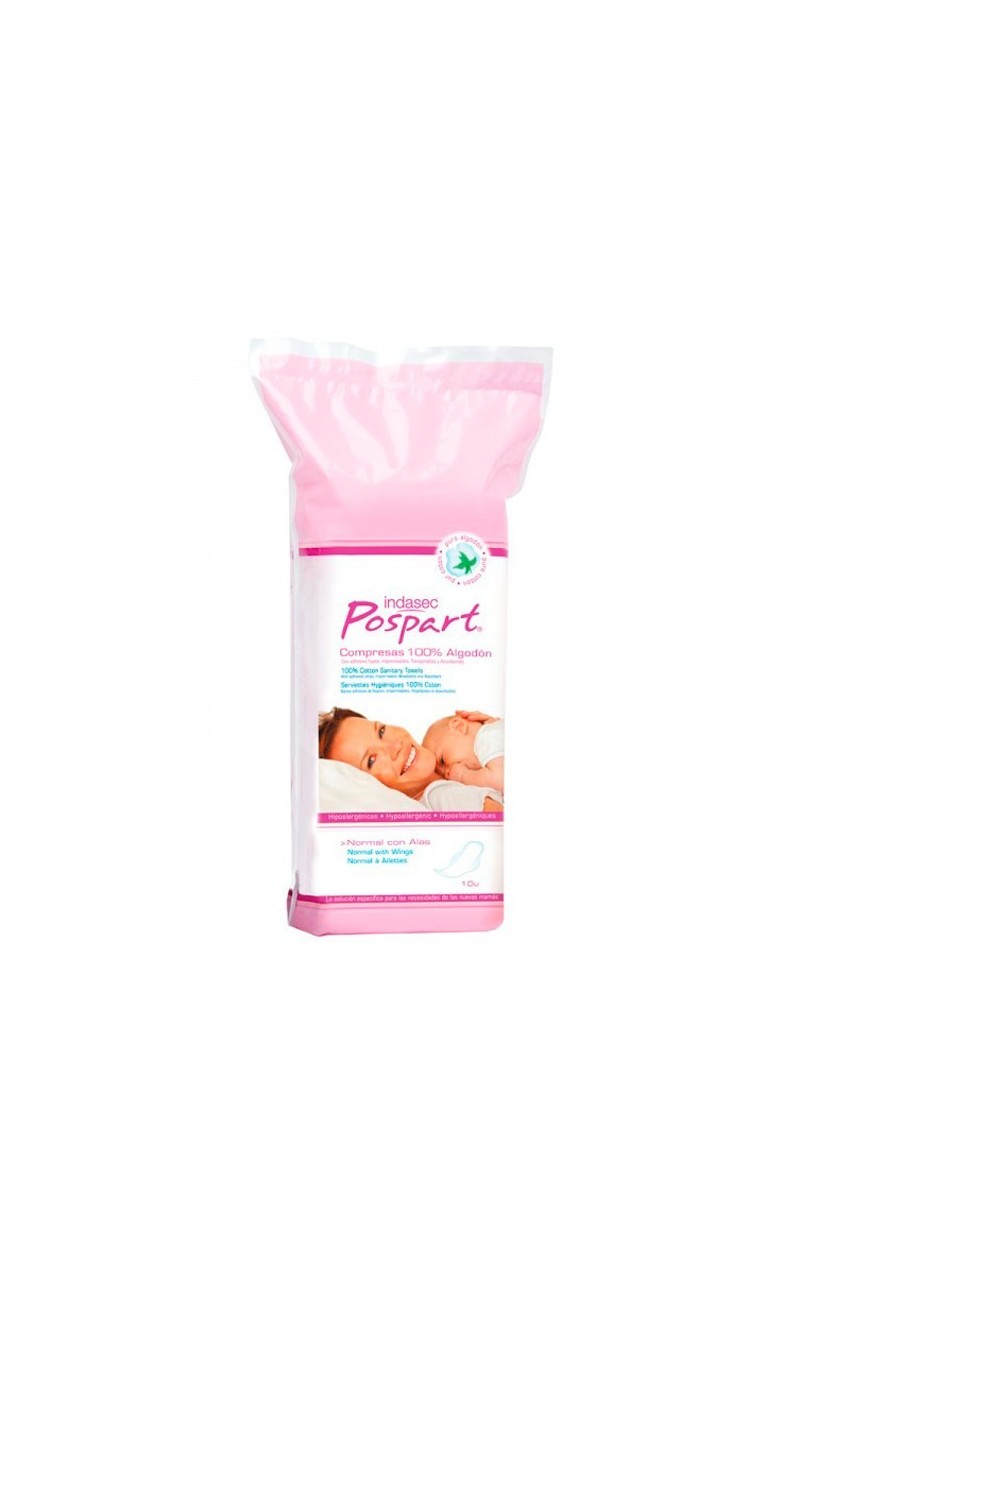 Indasec Postpartum Feminine Hygiene Pads With Wings 10U